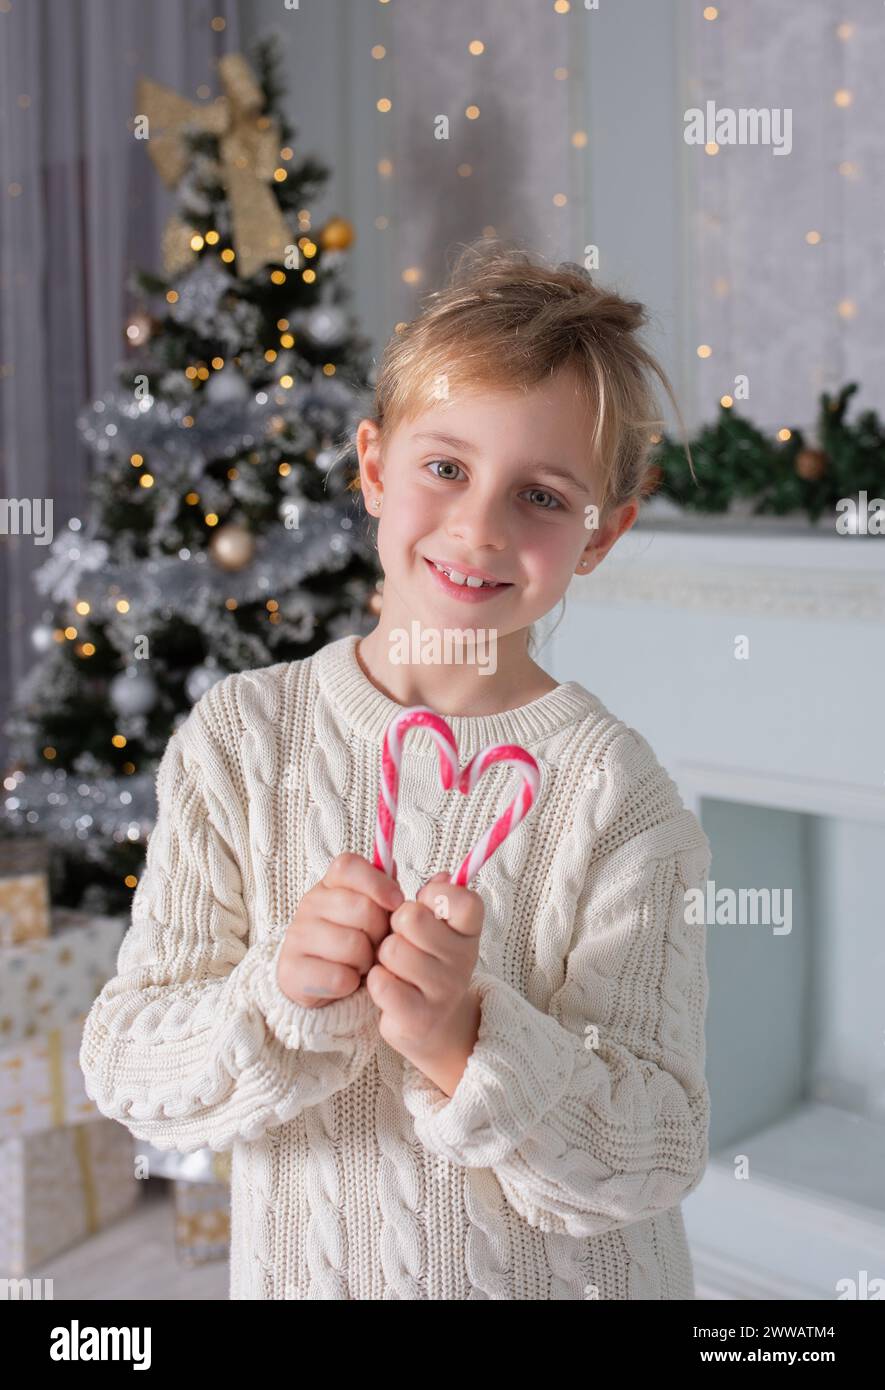 Weihnachtskerzenherz. Das kleine Neujahrsmädchen hat Weihnachtskaramell in Herzform zusammengestellt. Weihnachtsporträt in hellem Hintergrund Stockfoto